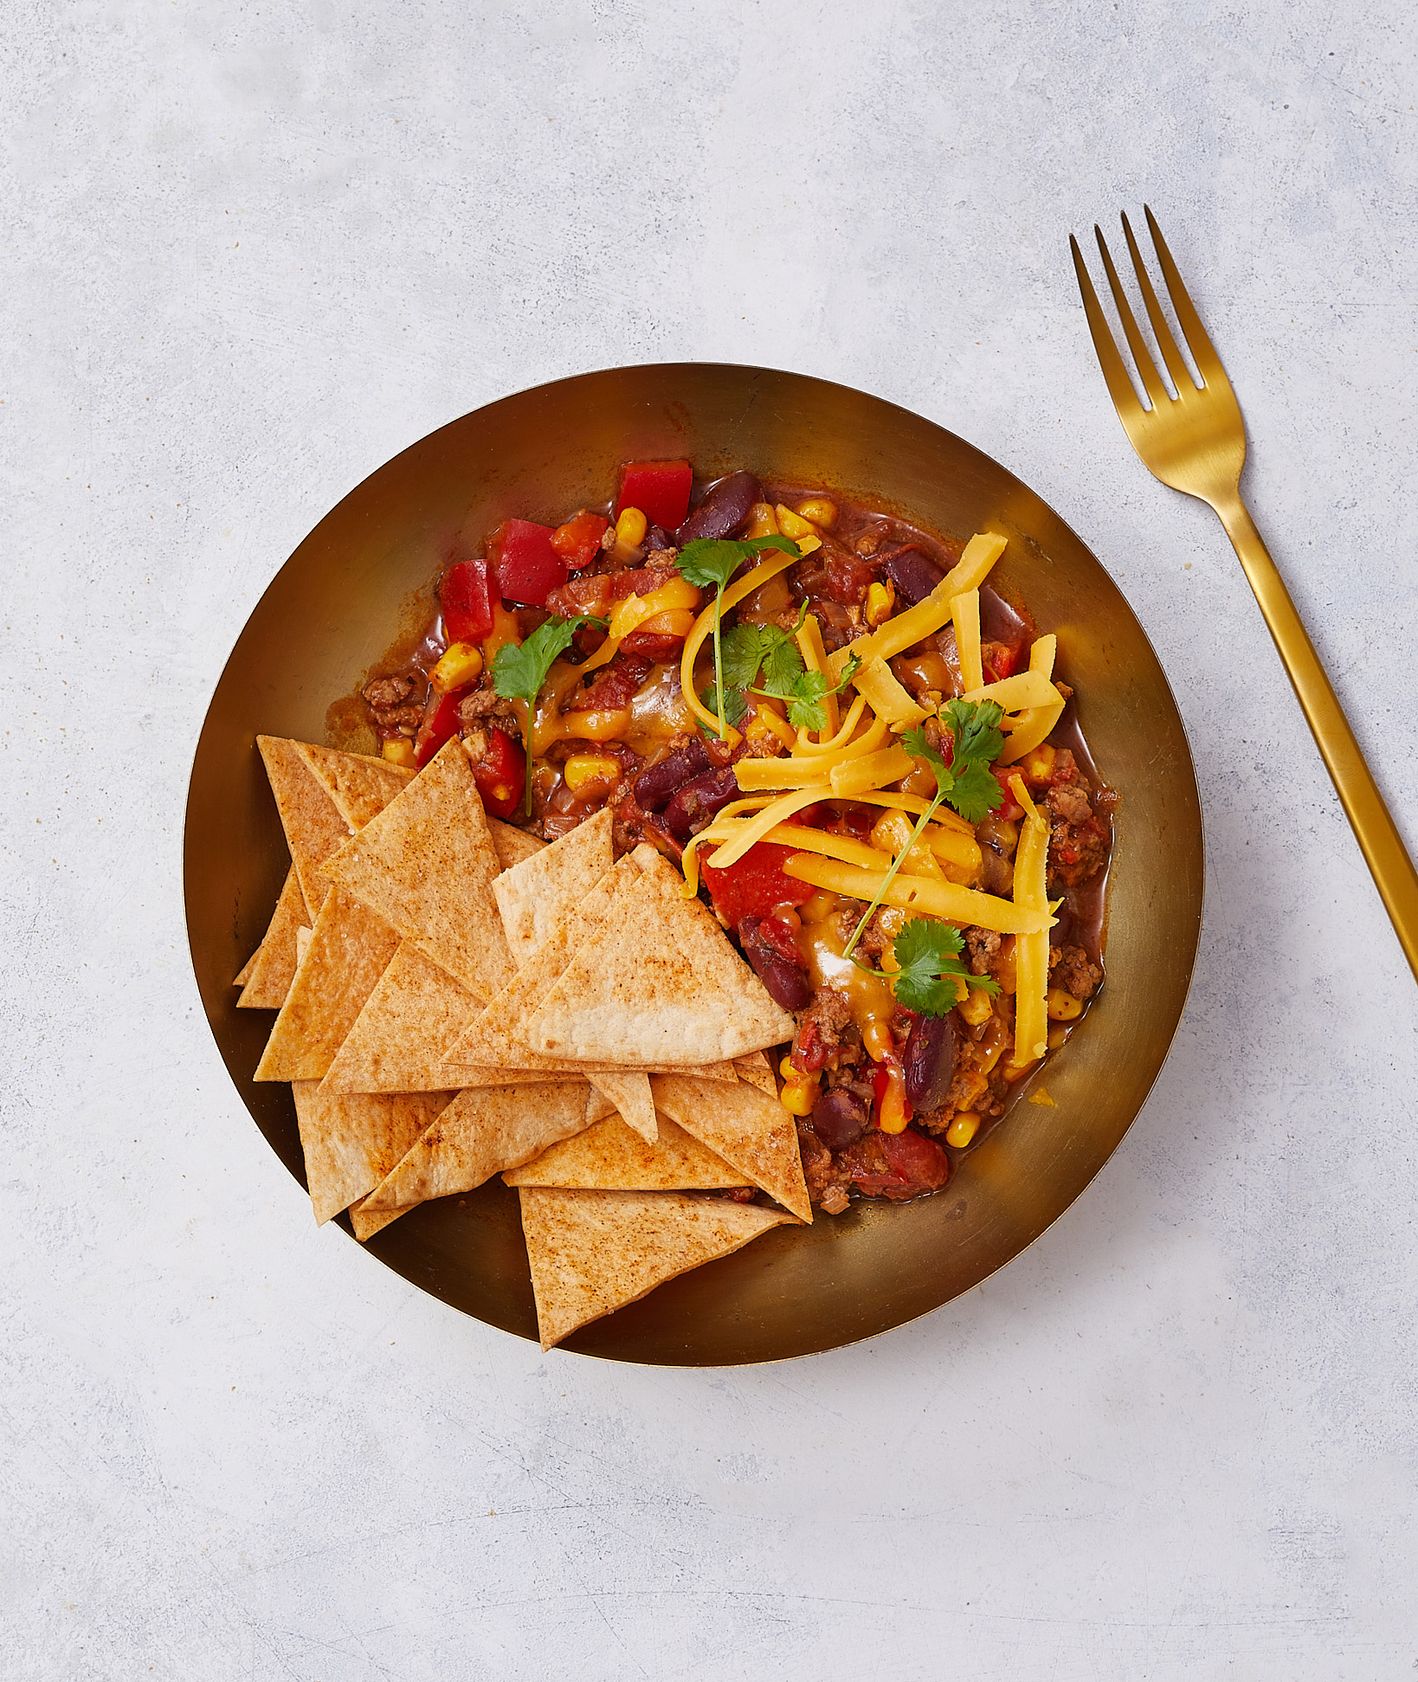 Ale Meksyk! Klasyczne chili con carne z cheddarem i domowymi nachosami (fot. Maciek Niemojewski)